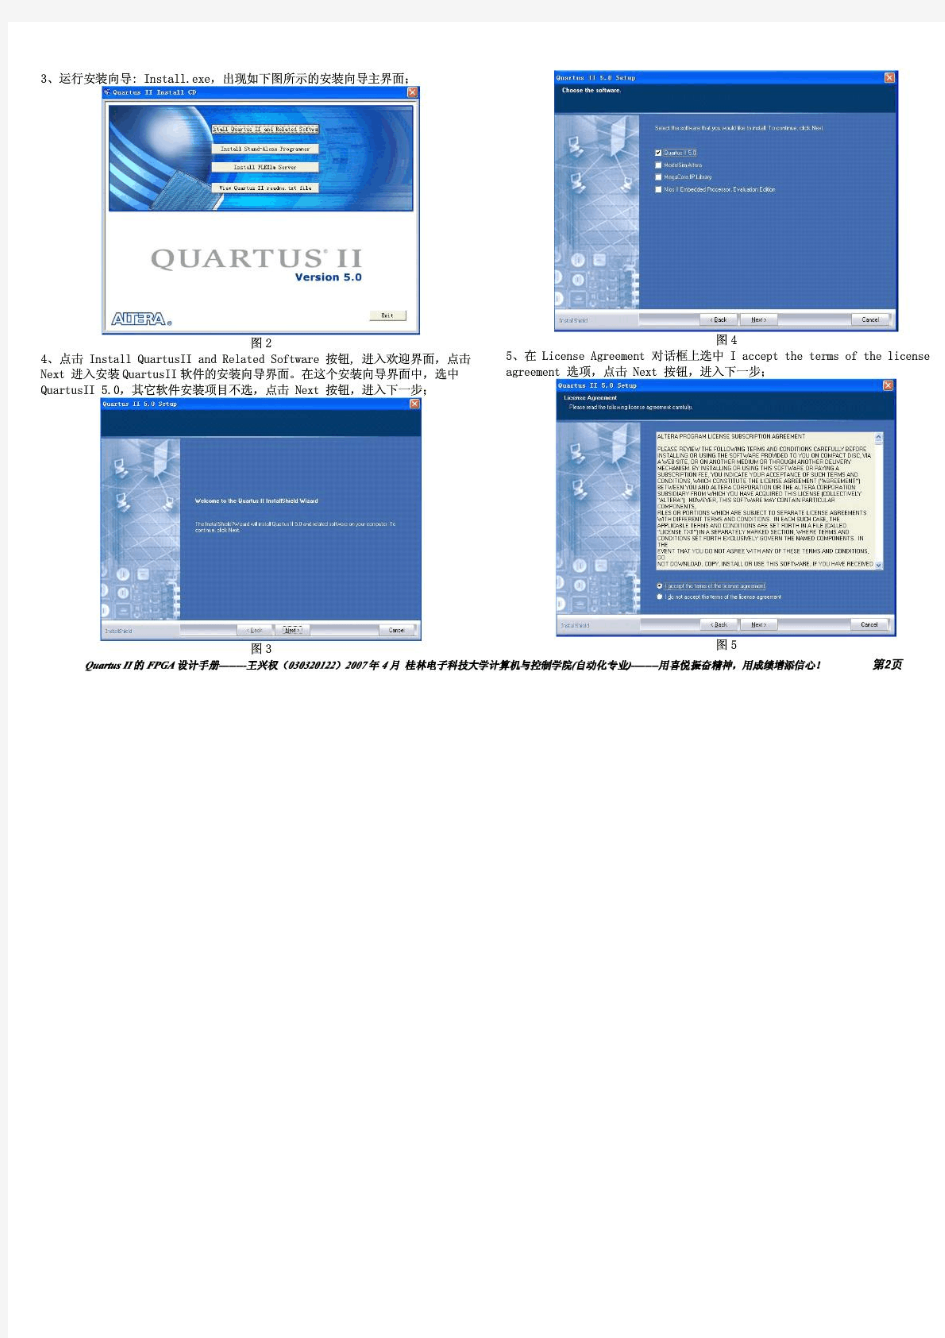 Quartus_II使用指南(非常详细)